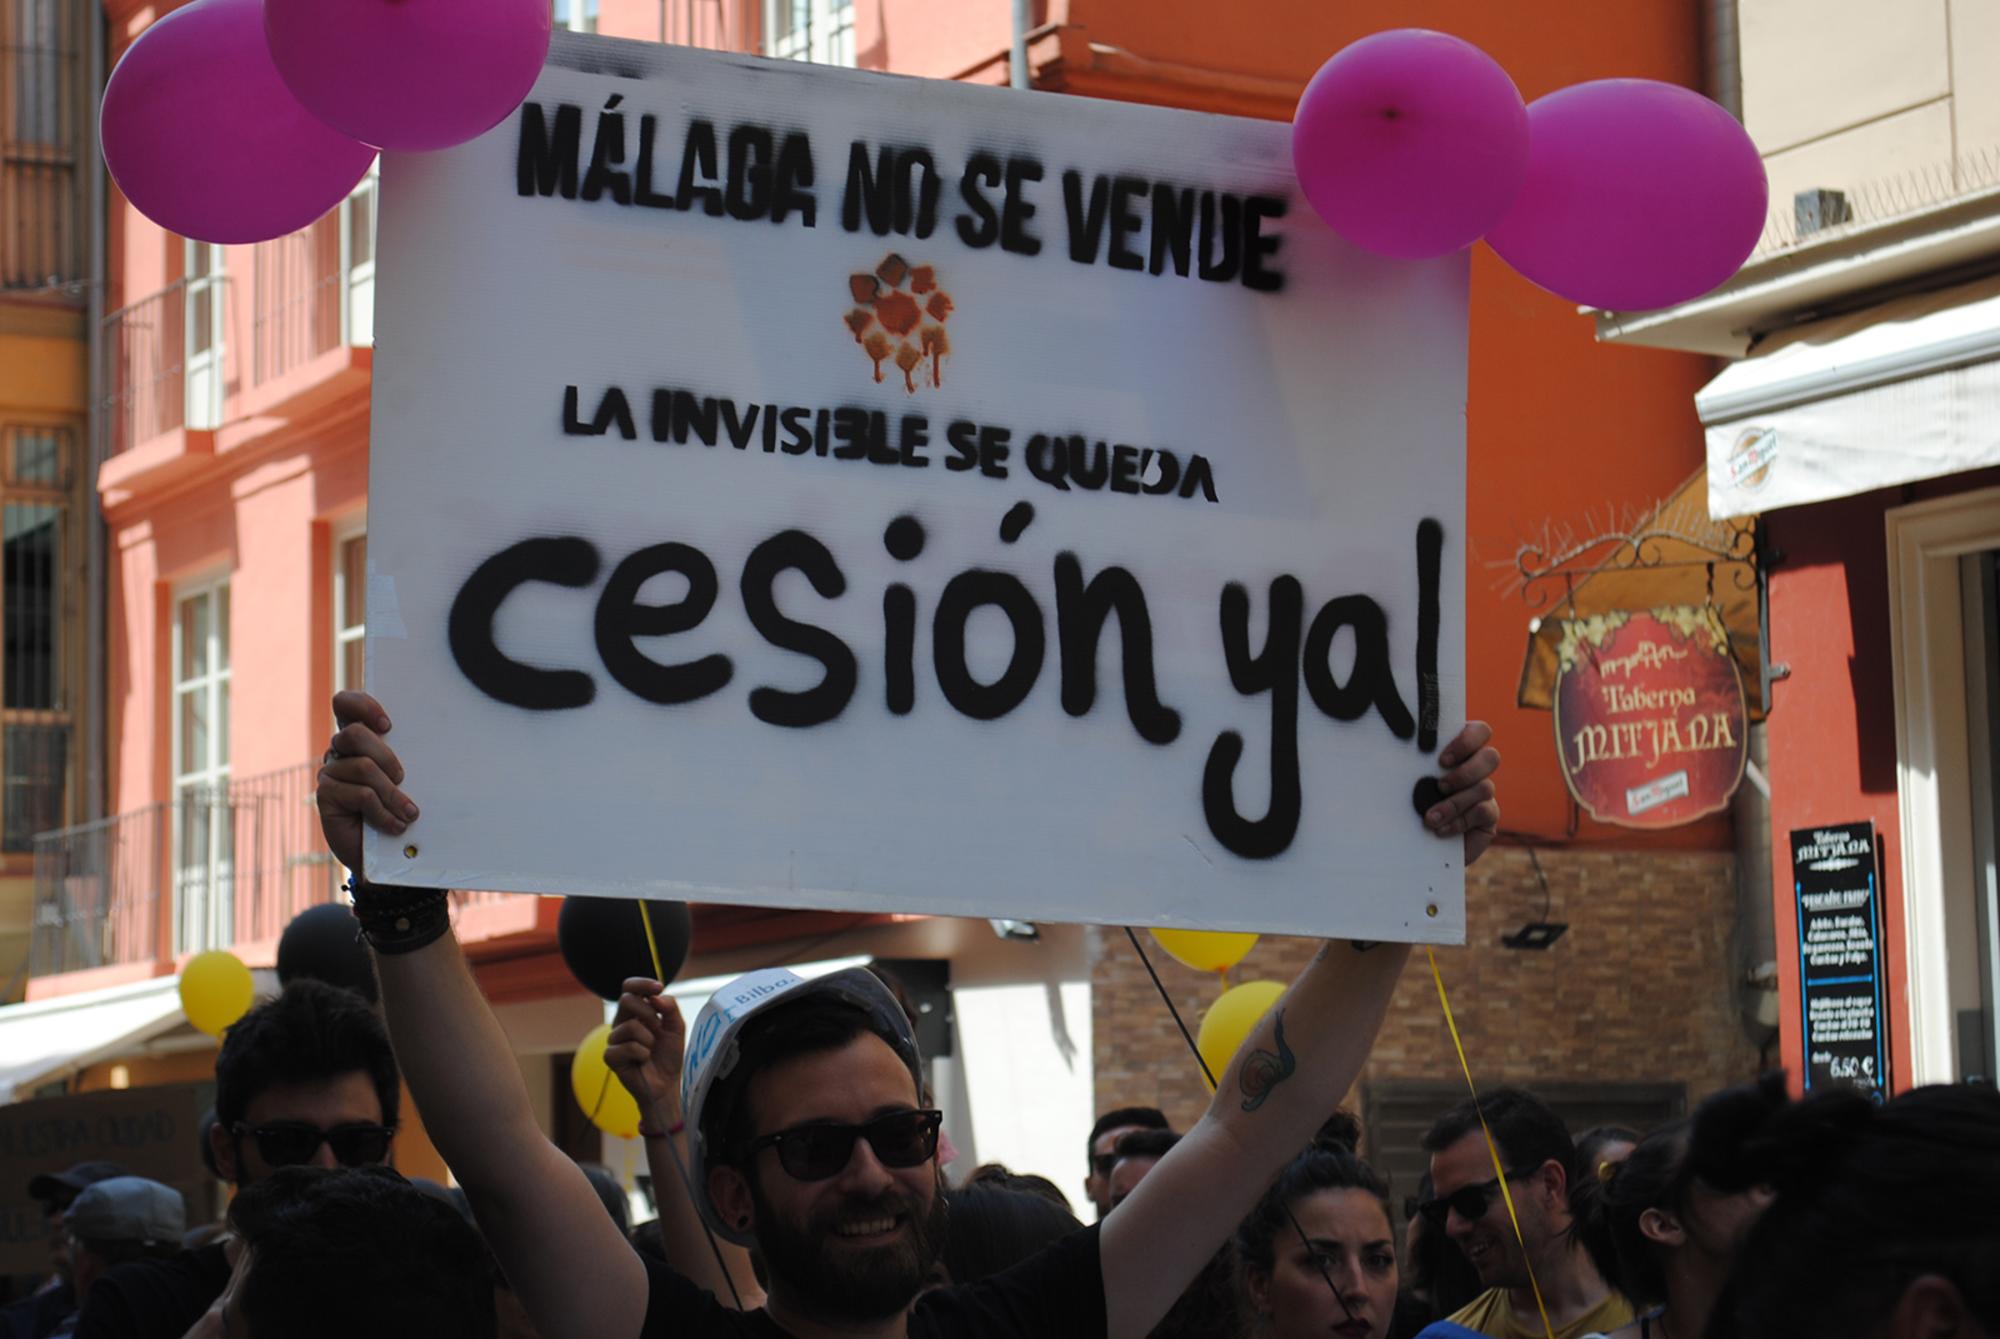 Málaga no se vende Invisible